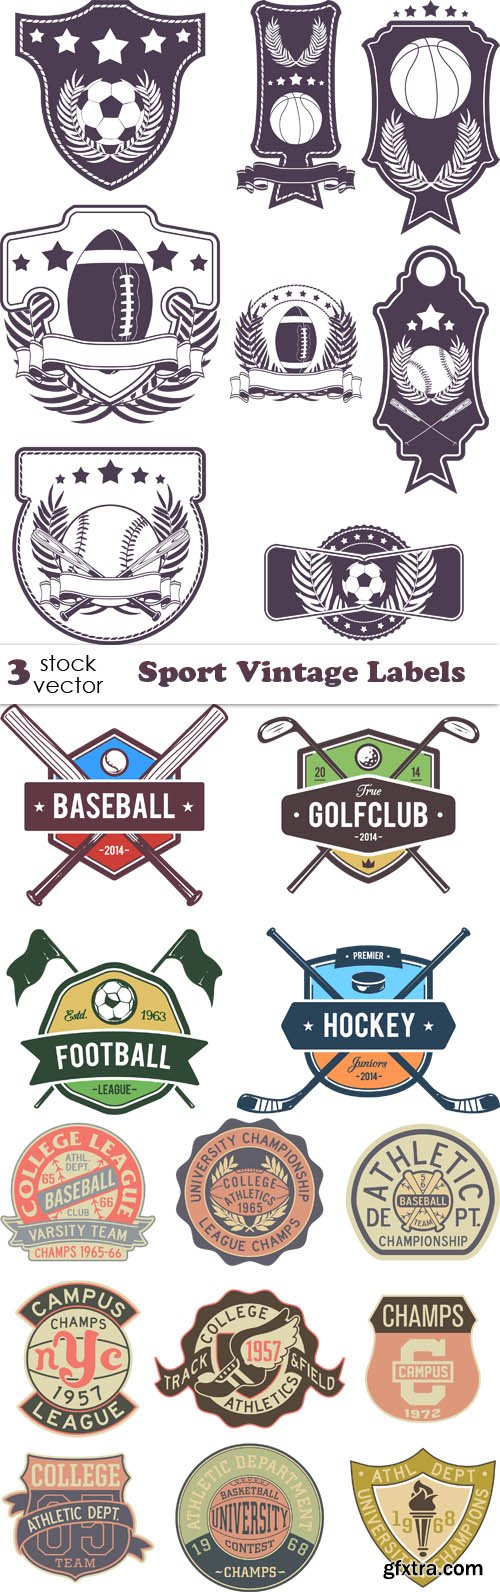 Vectors - Sport Vintage Labels